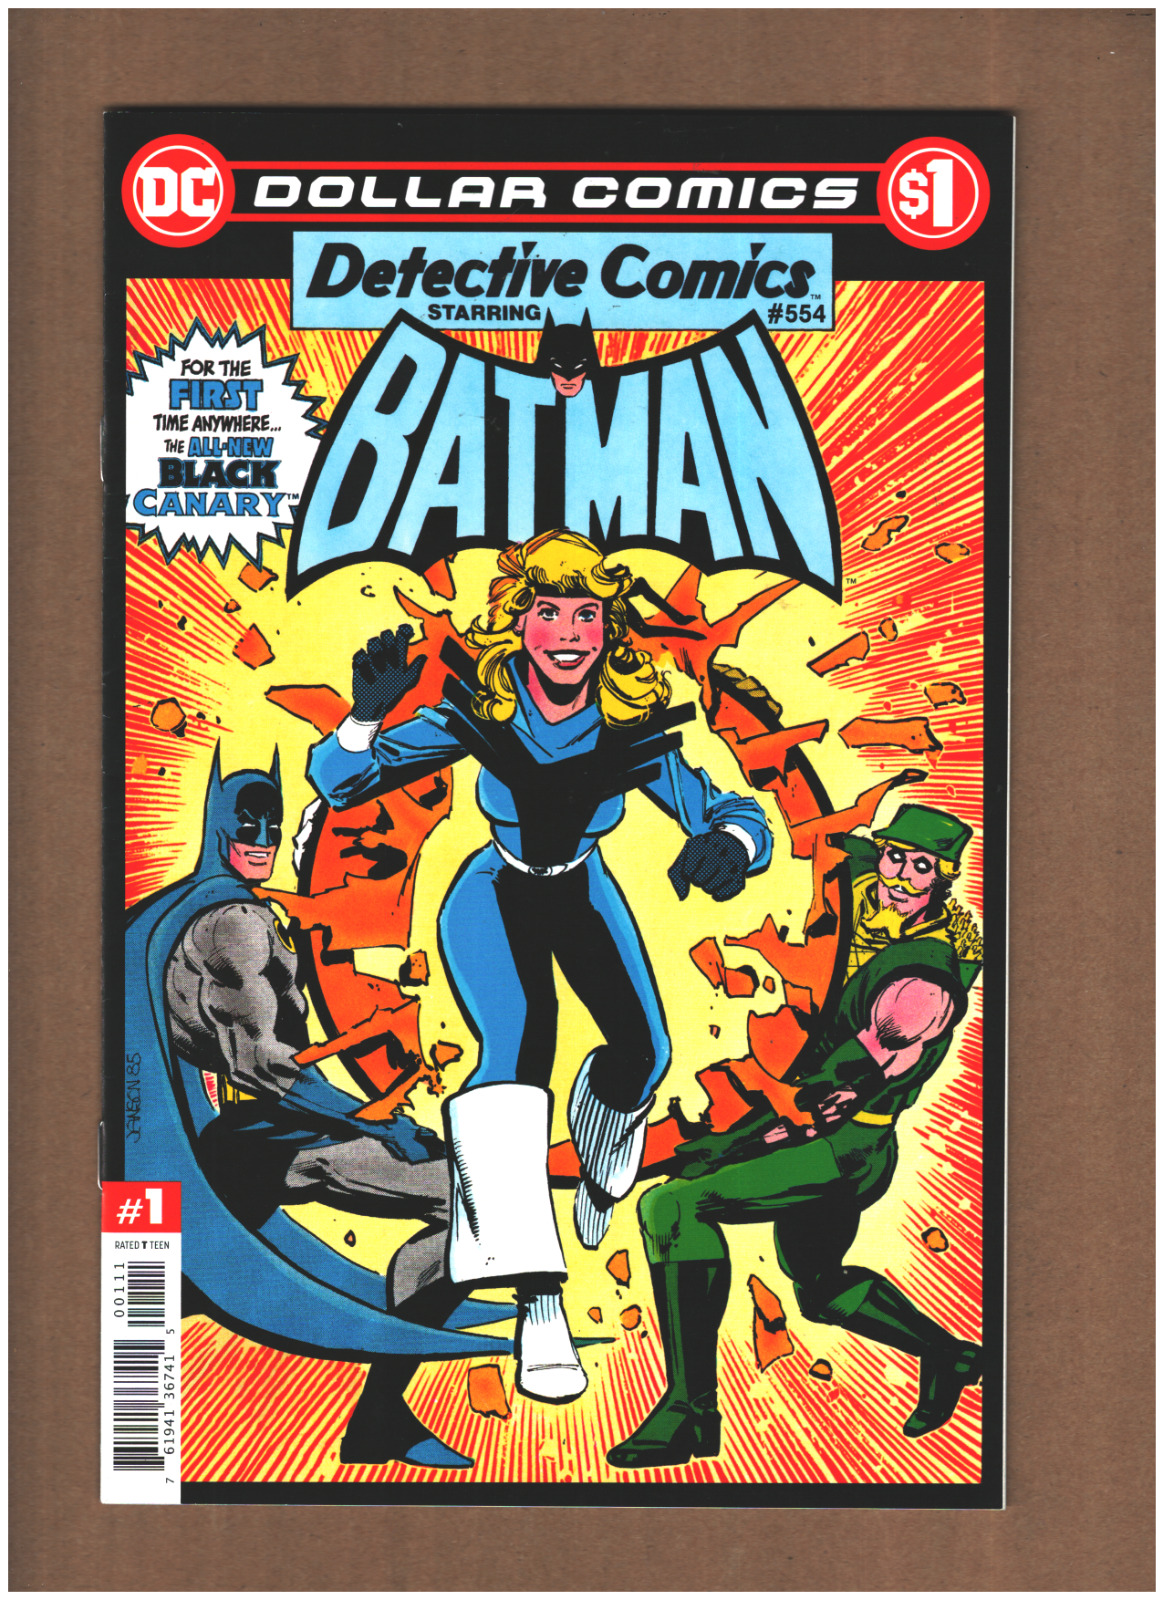 Dollar Comics: Detective Comics #554 DC Comics 2020 BATMAN BLACK CANARY NM- 9.2